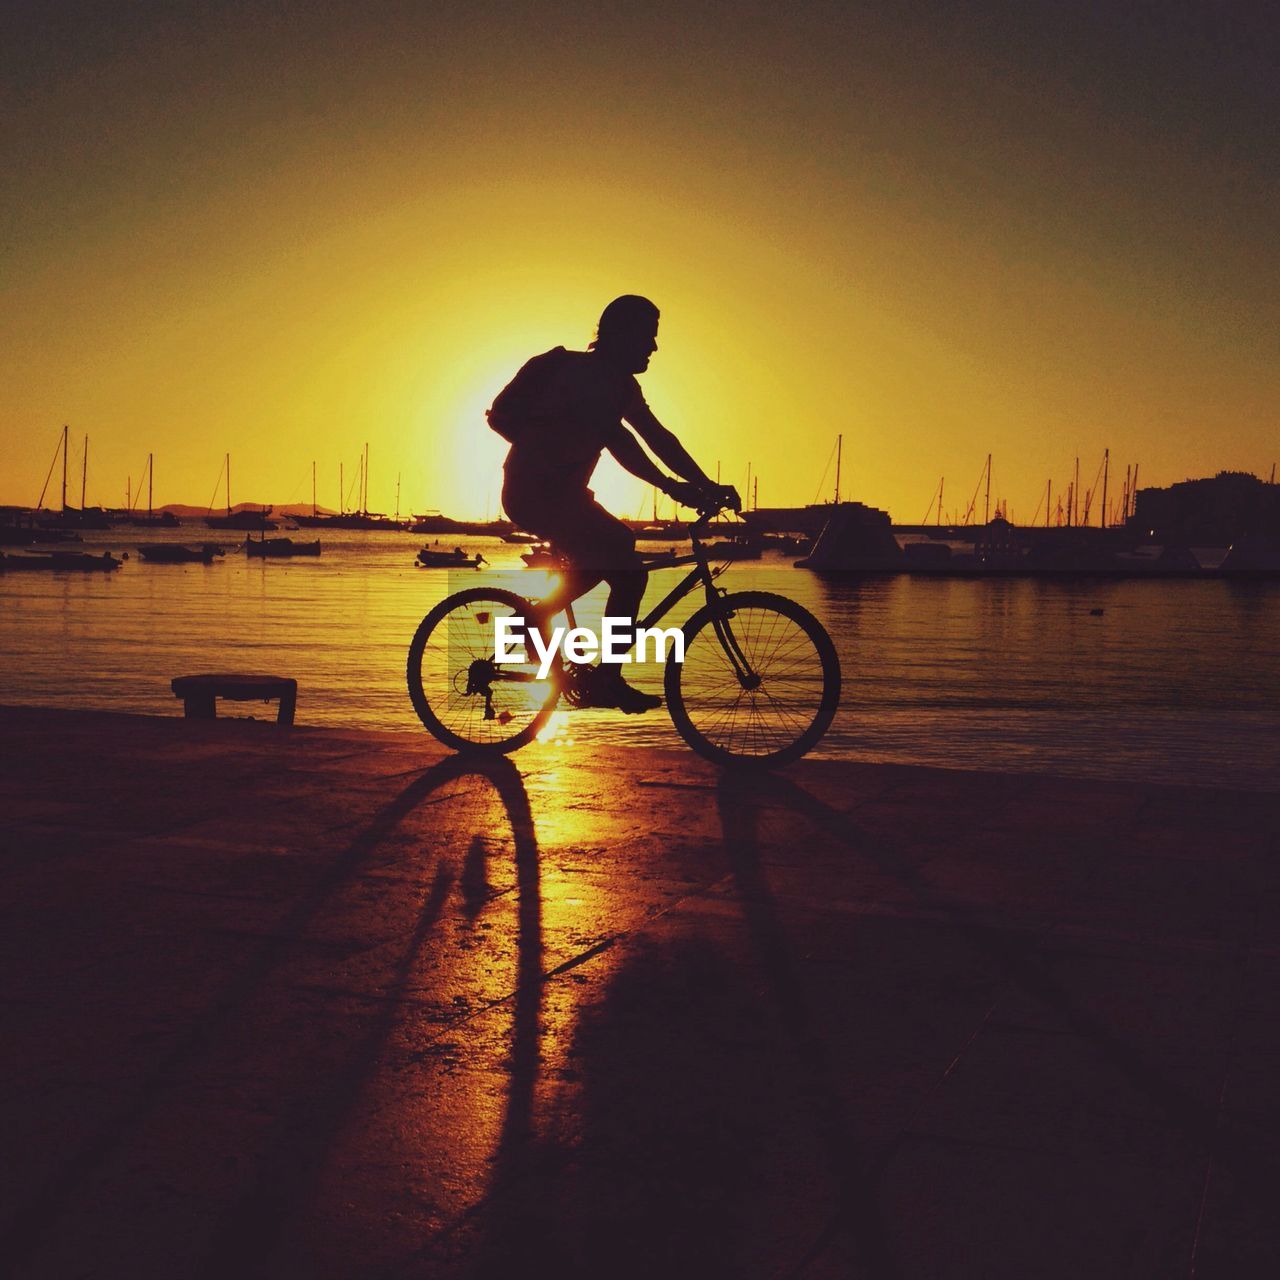 Man riding bicycle at sunset